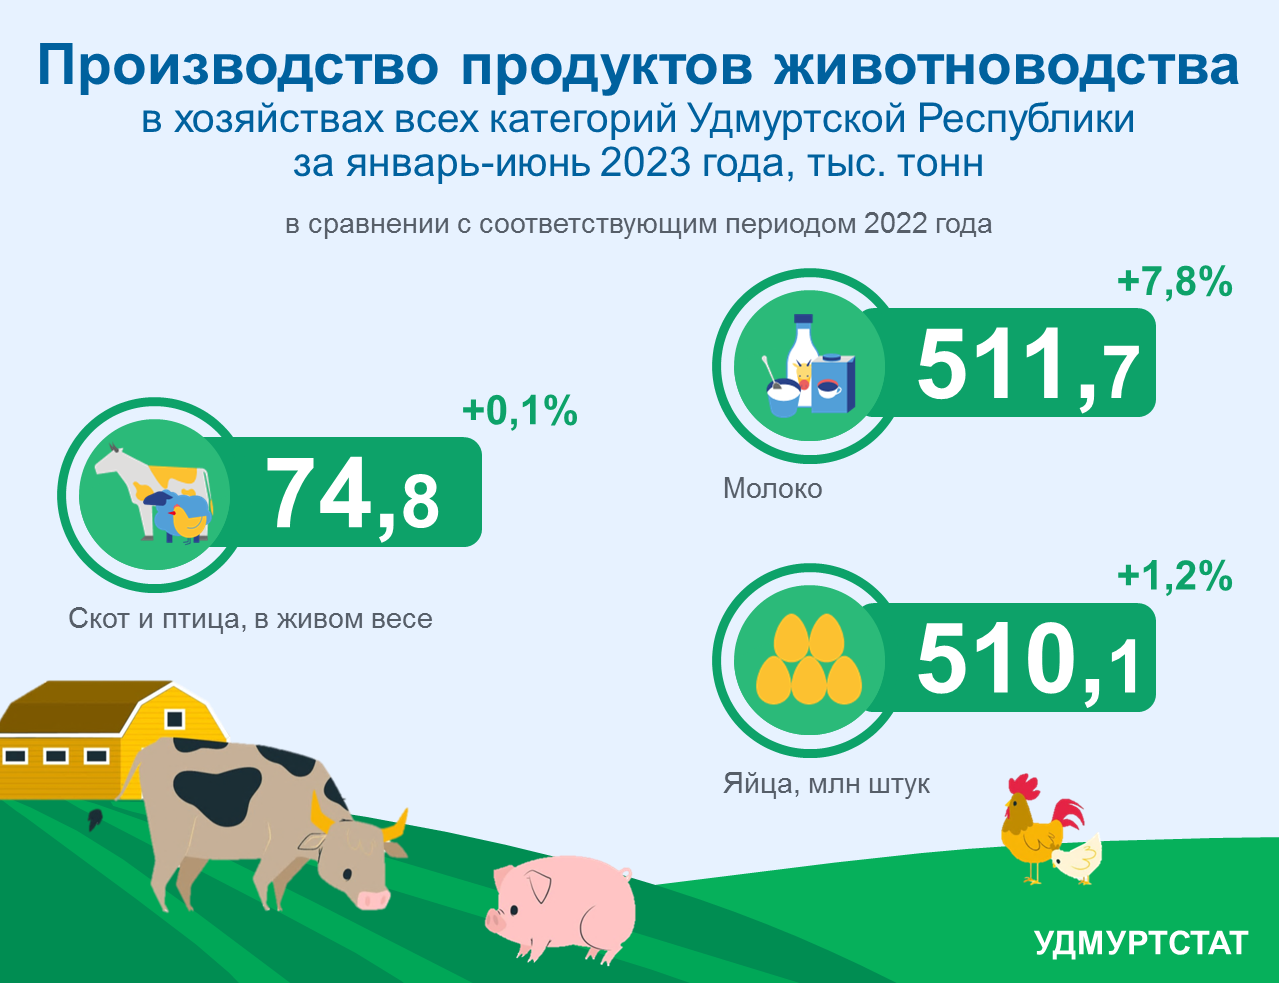 Производство продуктов животноводства за январь-июнь 2023 года.